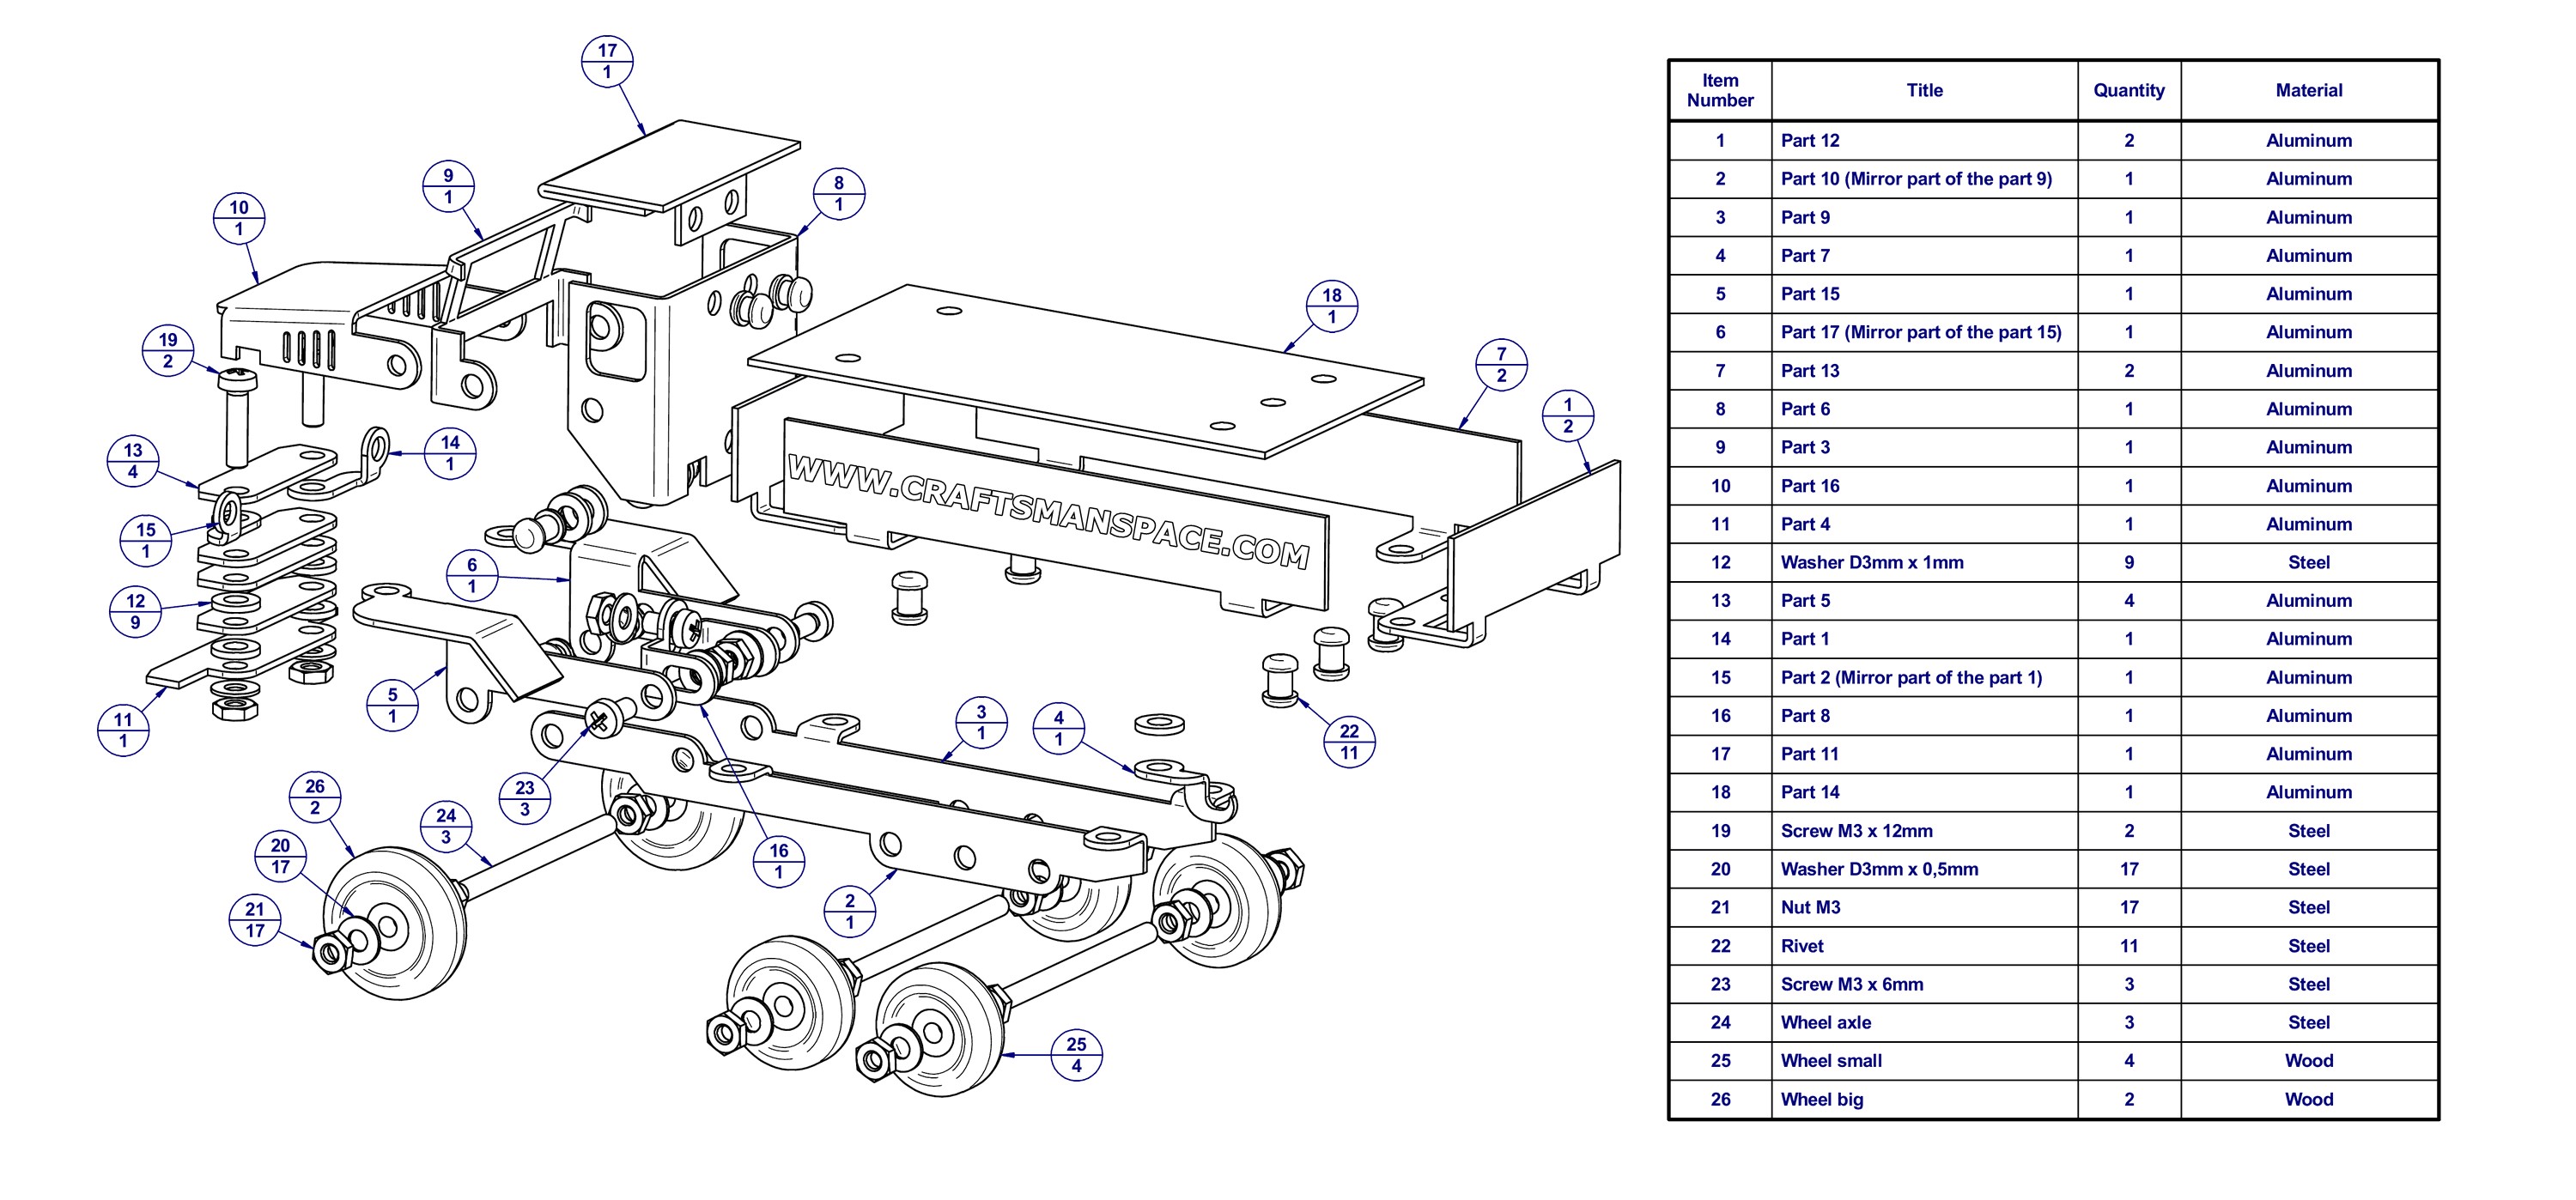 Ford F150 Parts Diagram Truck Parts Dump Truck Parts Of Ford F150 Parts Diagram